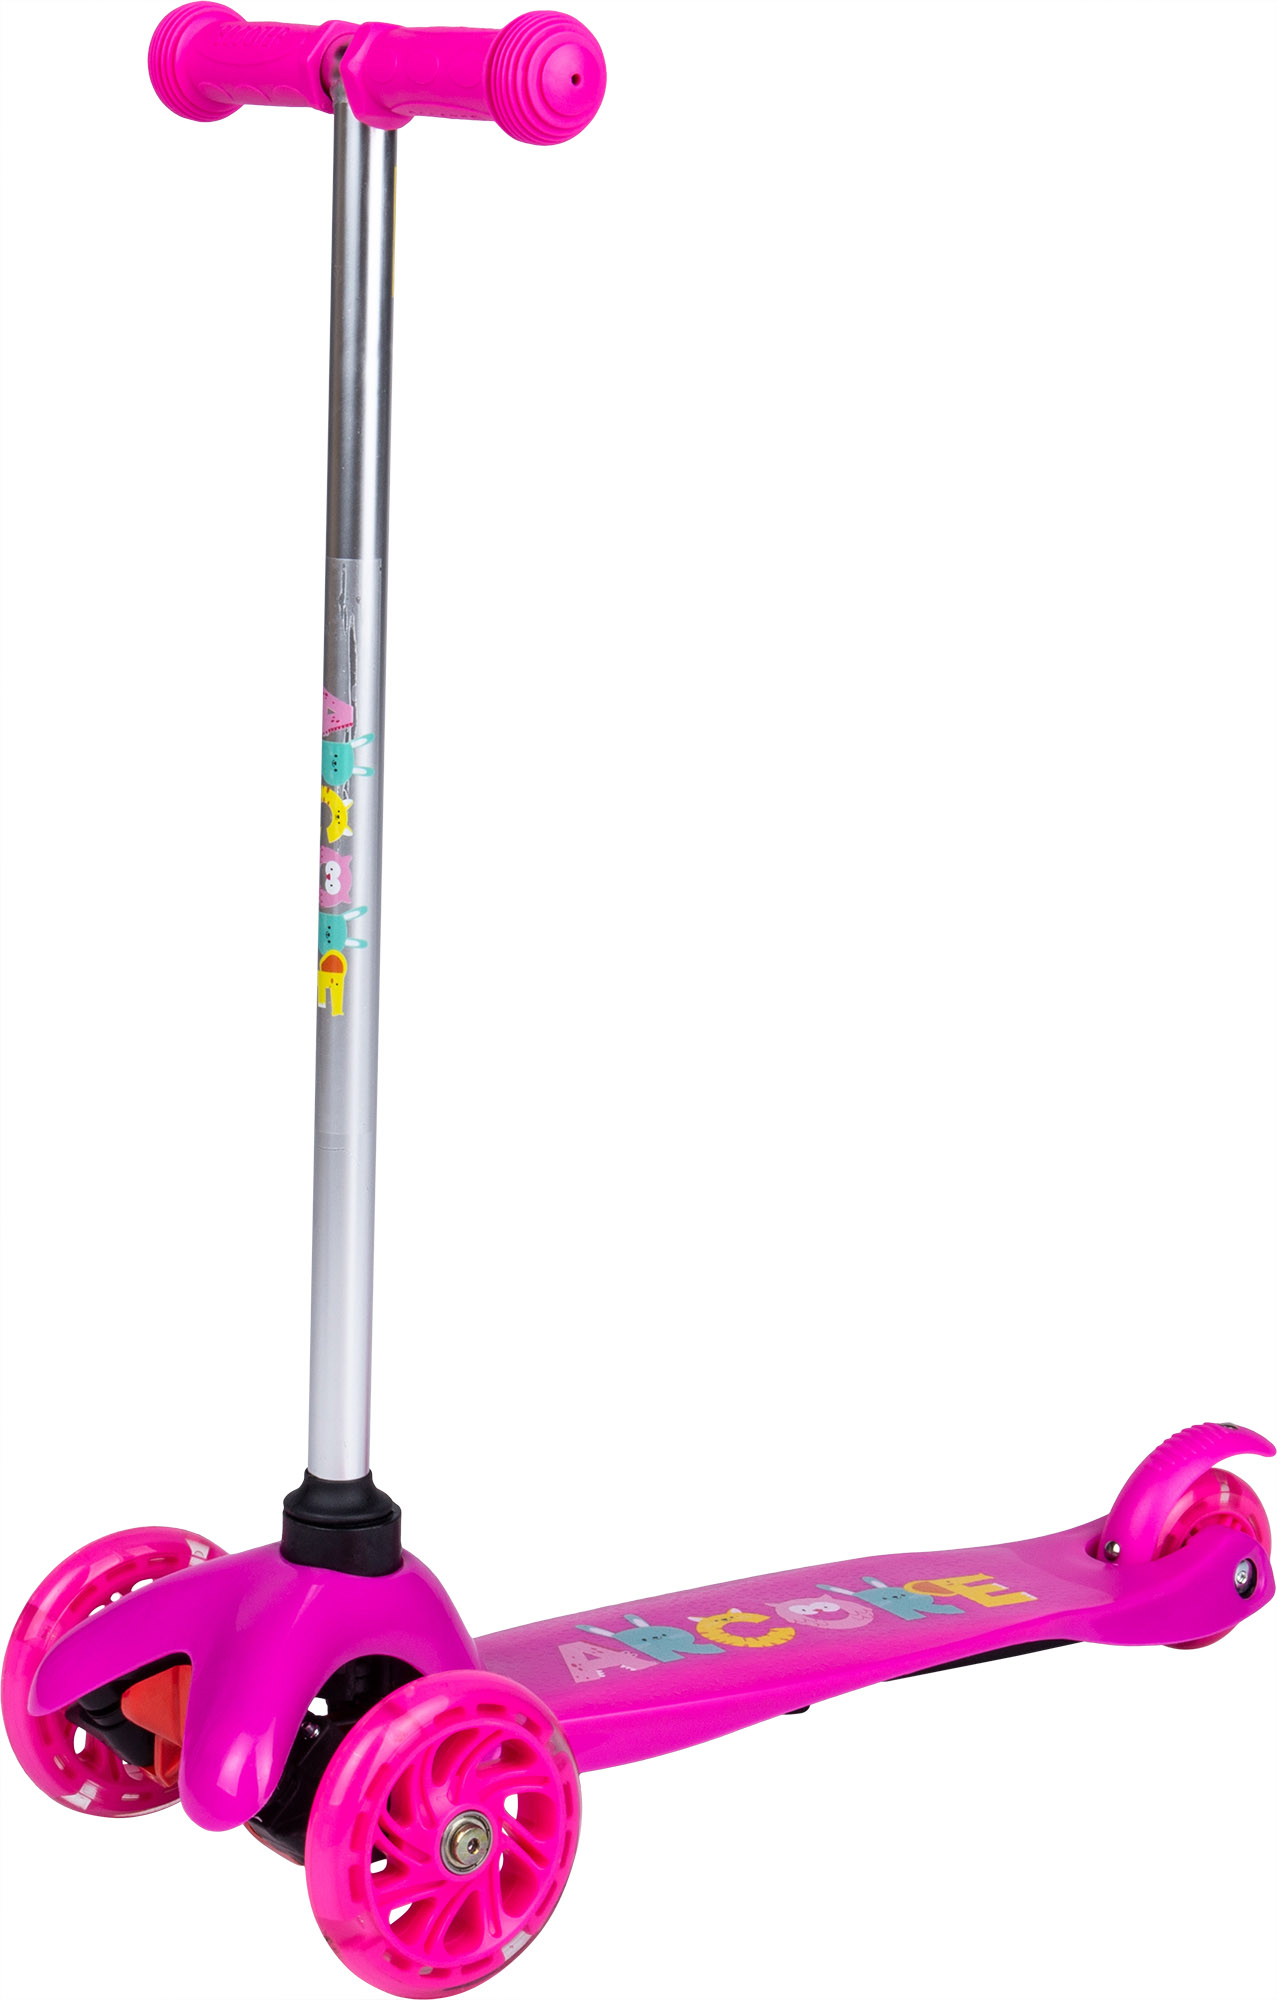 3-wheel kids’ scooter